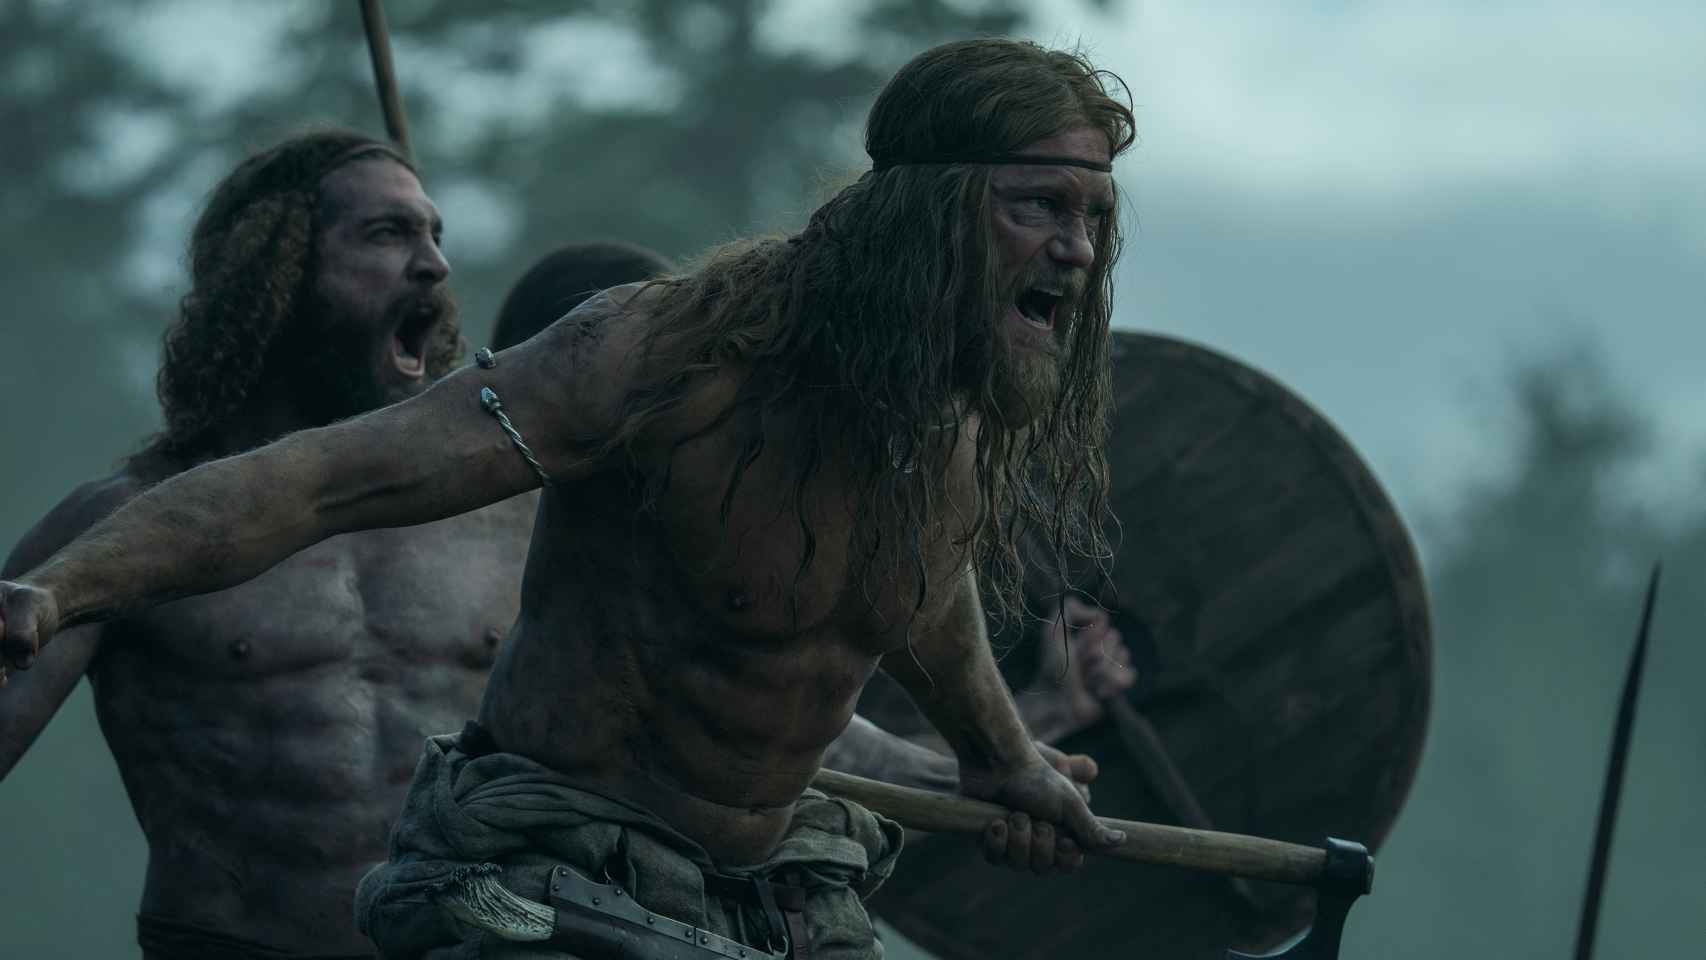 Alexander Skarsgard interpreta al príncipe nórdico Amleth, que busca vengar la muerte de su padre